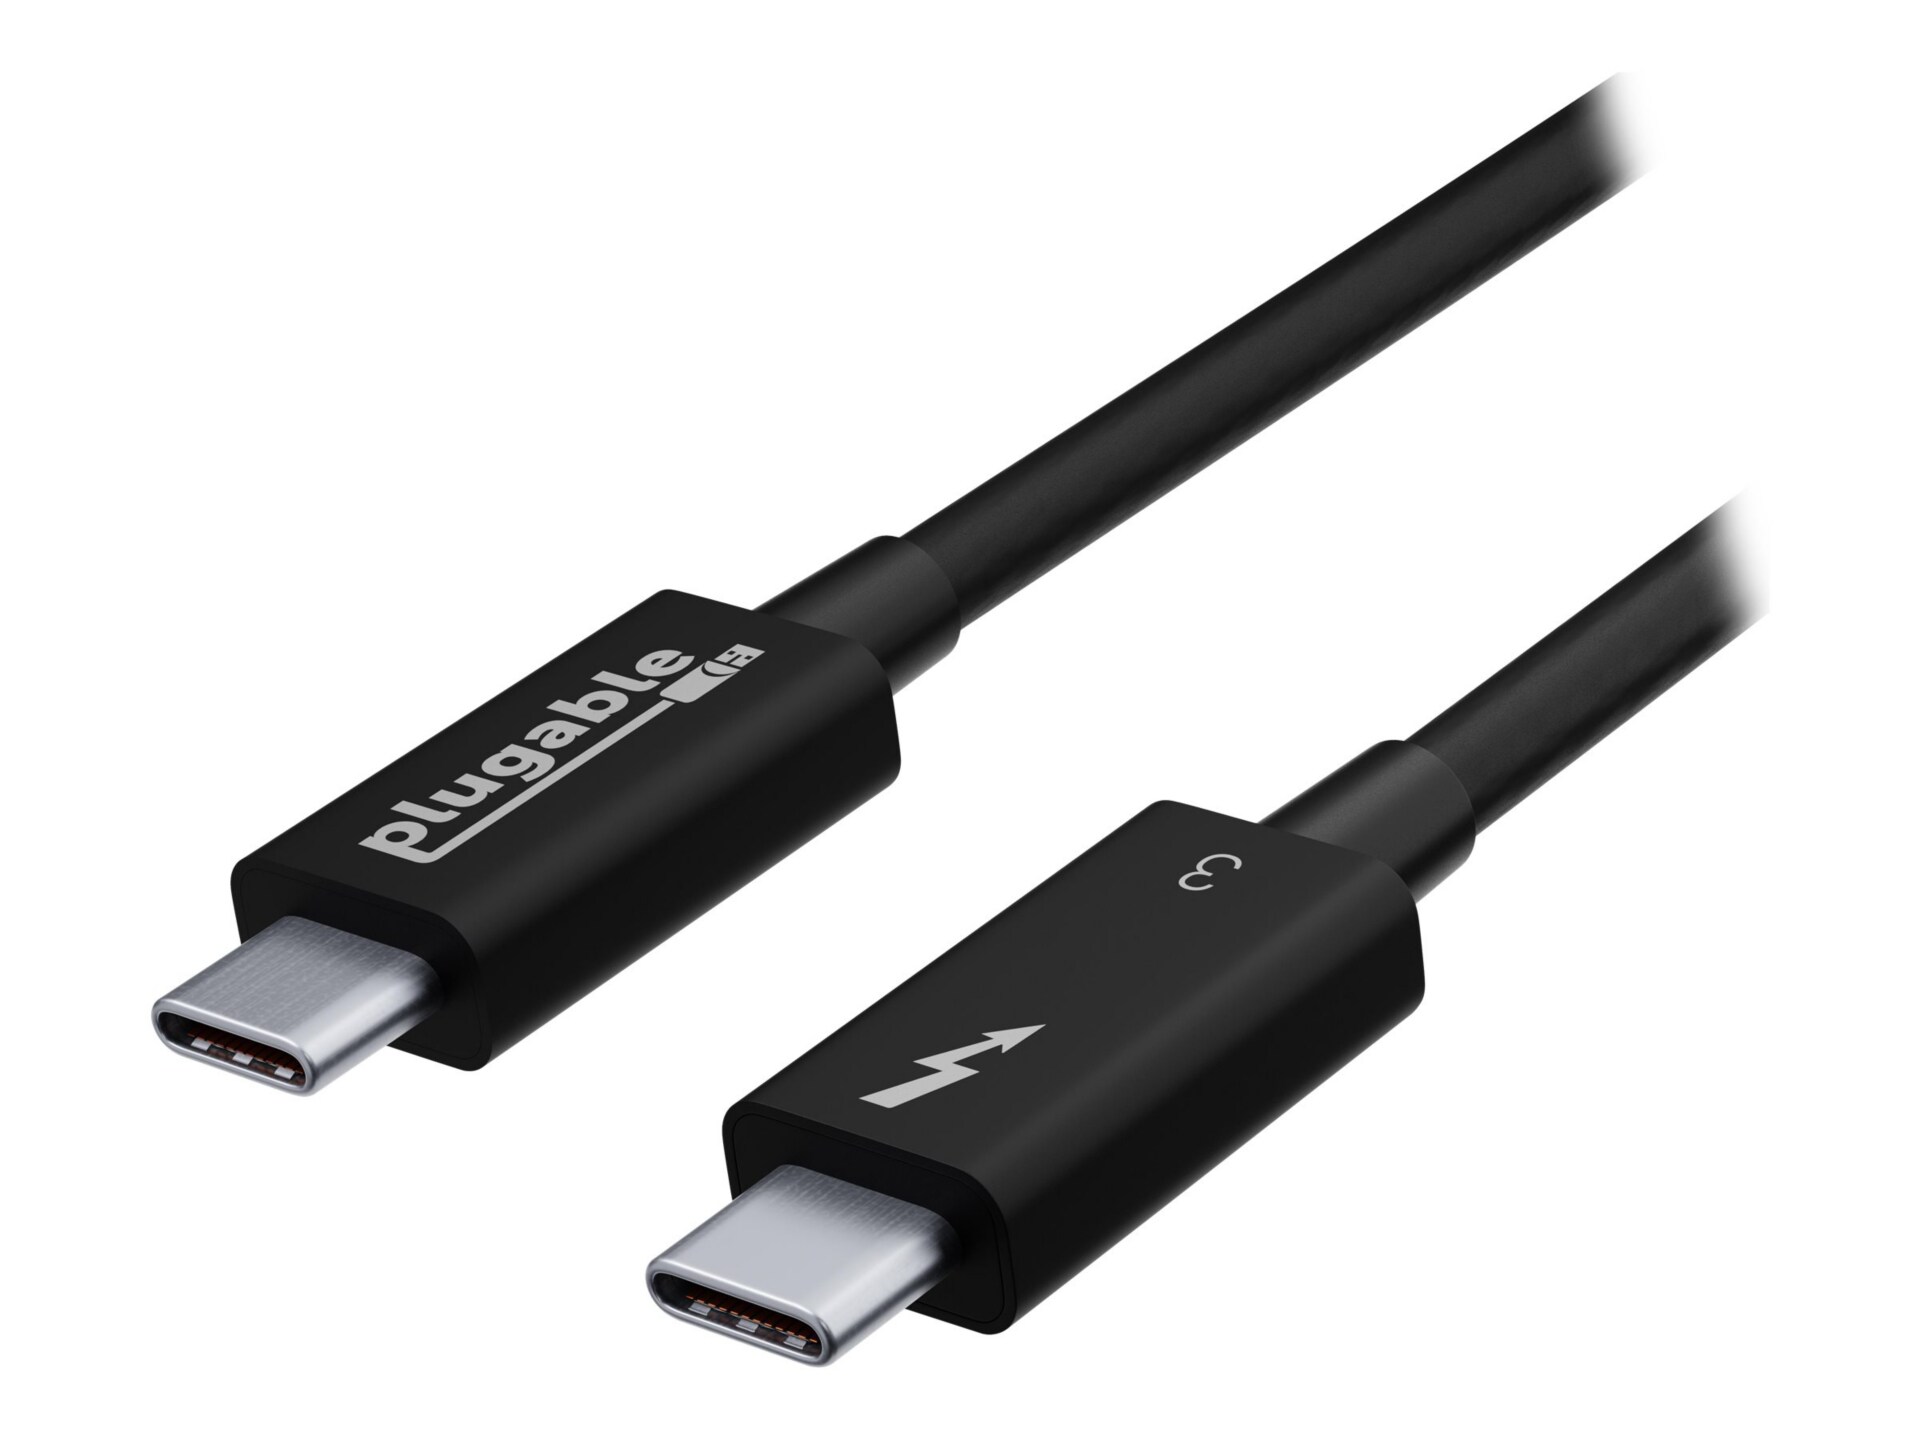 Plugable TBT3-20G2M - Thunderbolt cable - 24 pin USB-C to 24 pin USB-C - 2 m